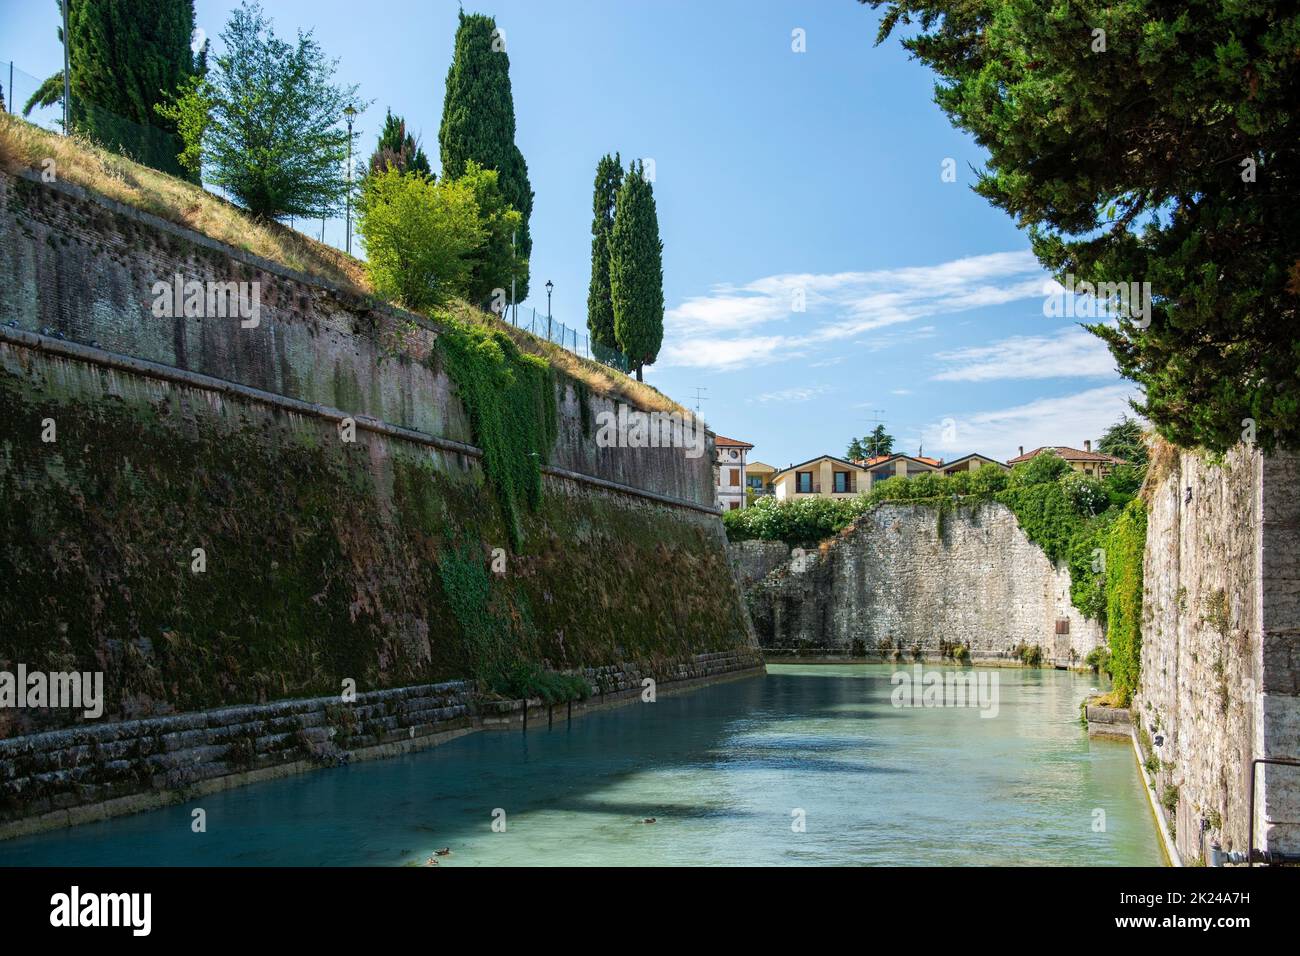 Peschiera del Garda ist eine italienische Gemeinde in der Provinz Verona, Region Venetien. Teile der Altstadt trennen mit ihren Festungsanlagen den OR Foto Stock